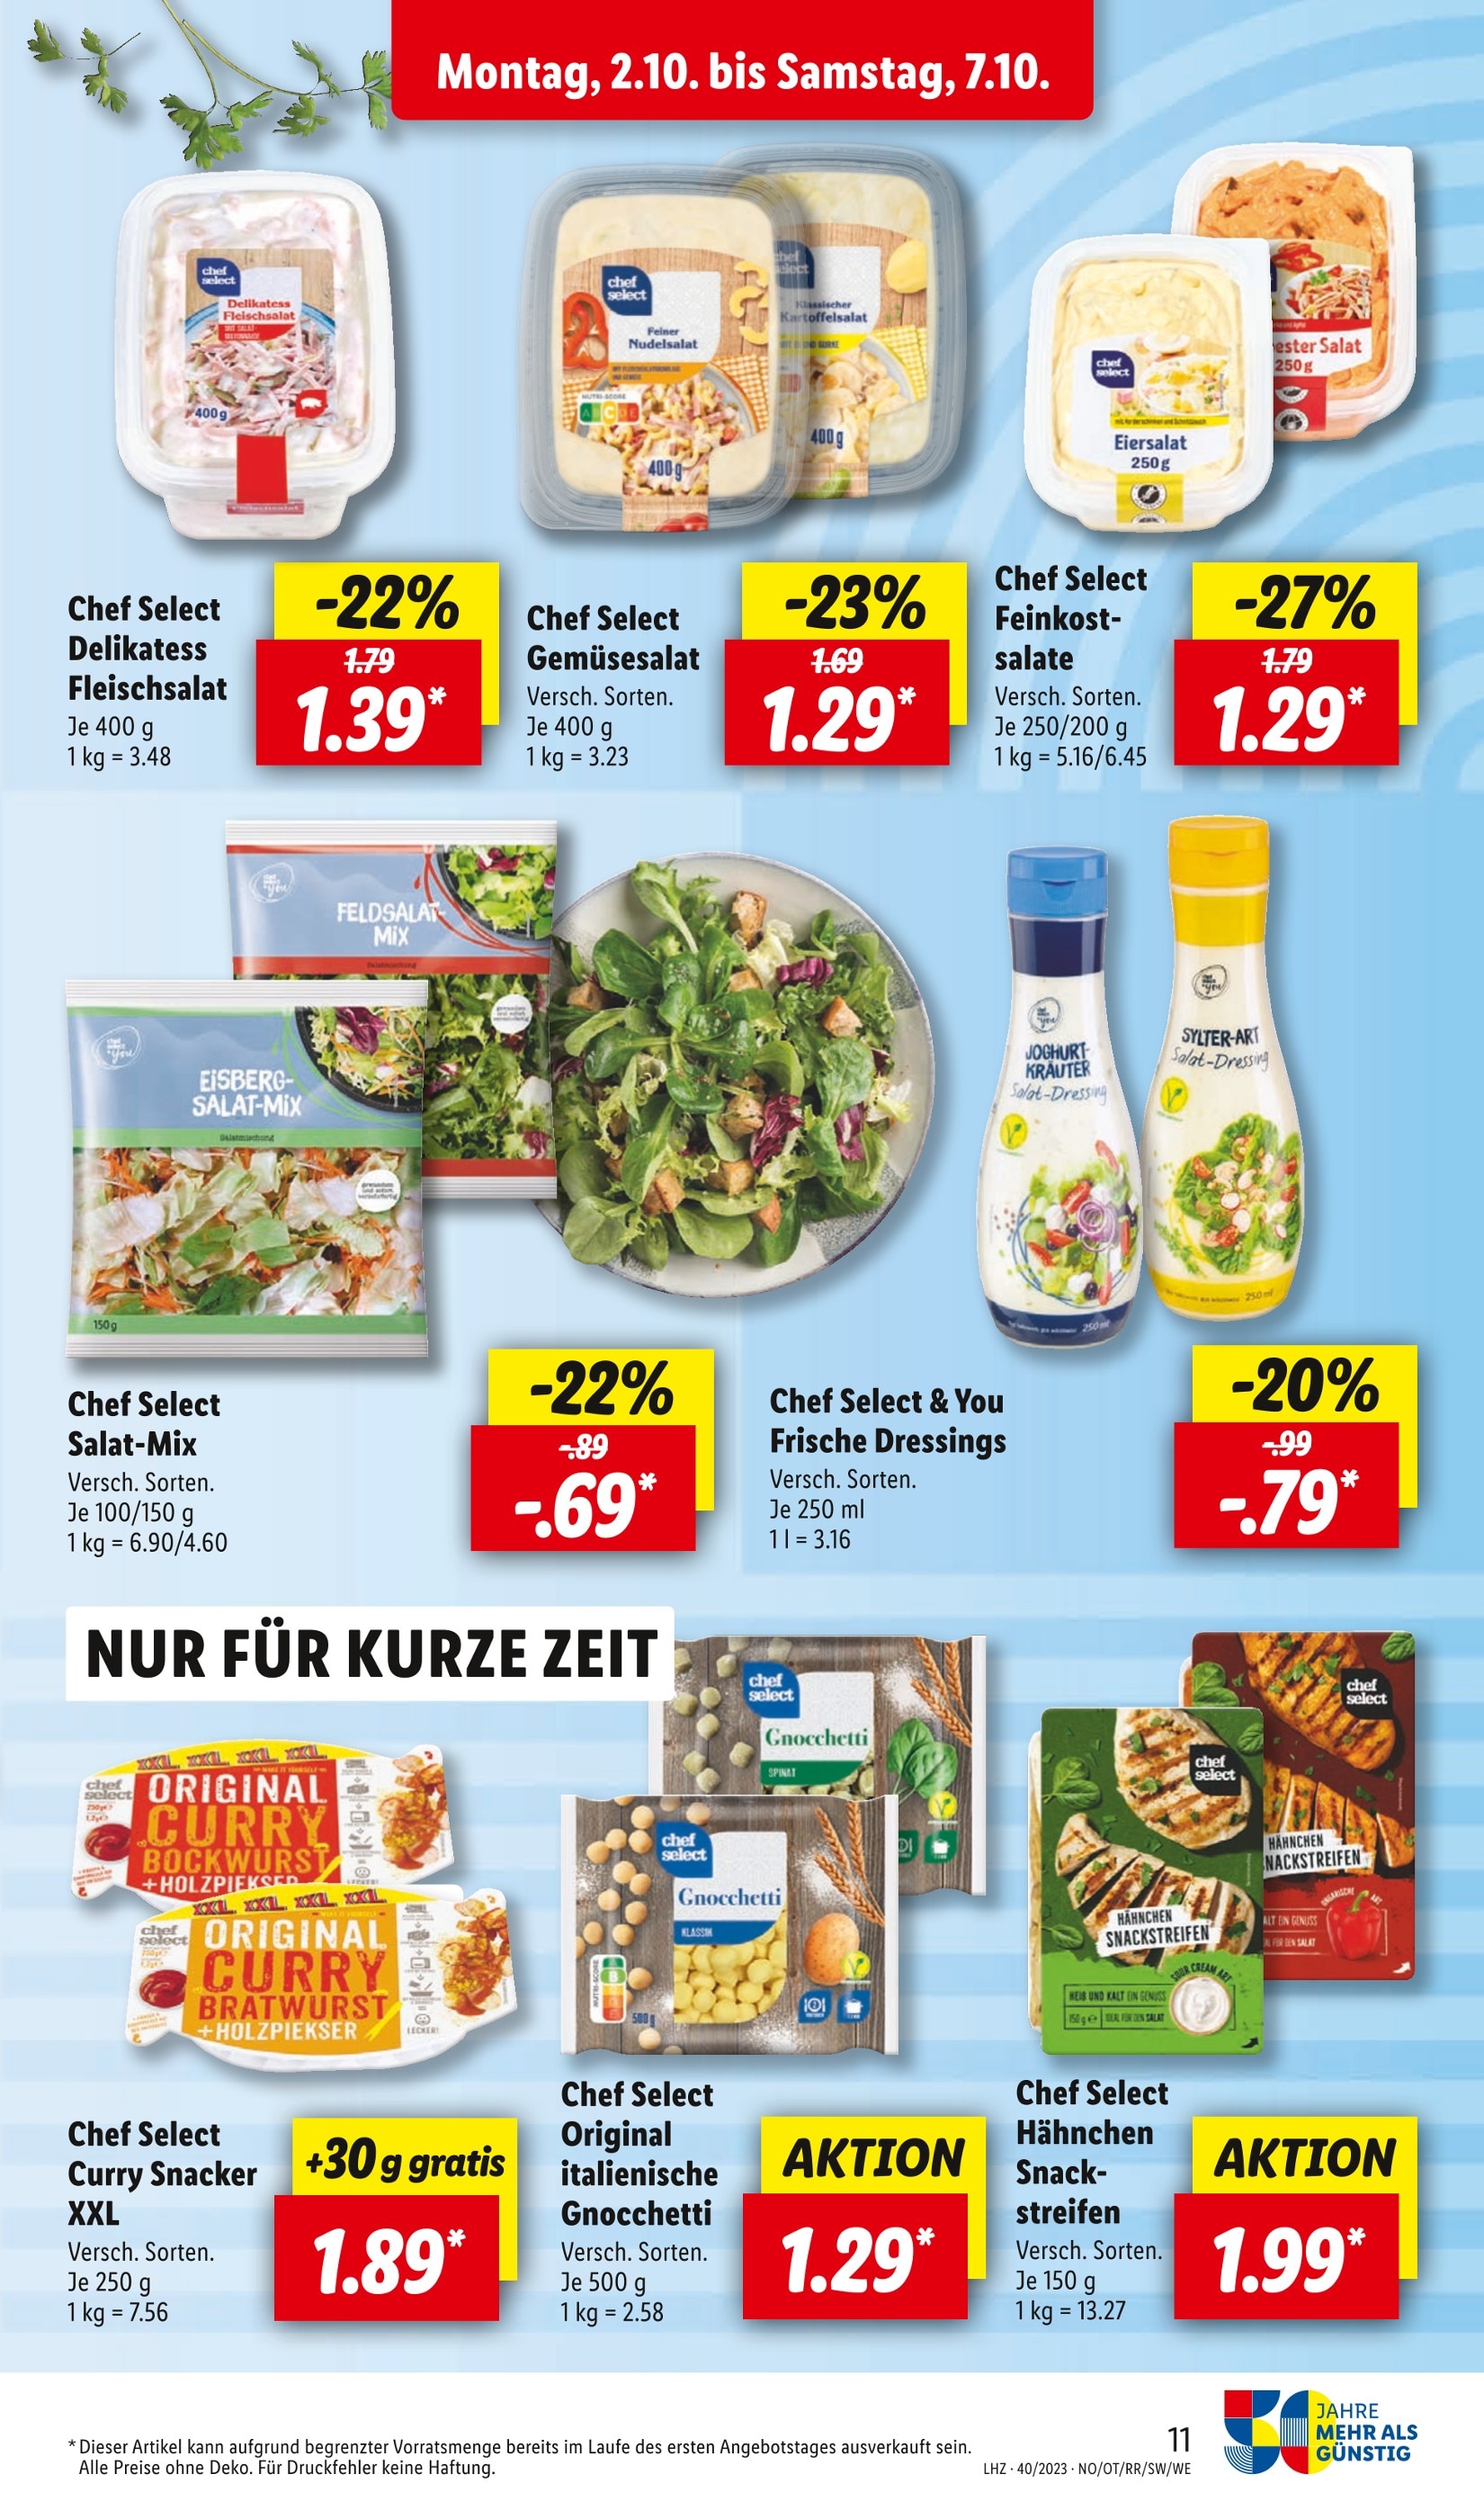 Kartoffelsalat kaufen in Heidelberg - günstige Heidelberg Angebote in